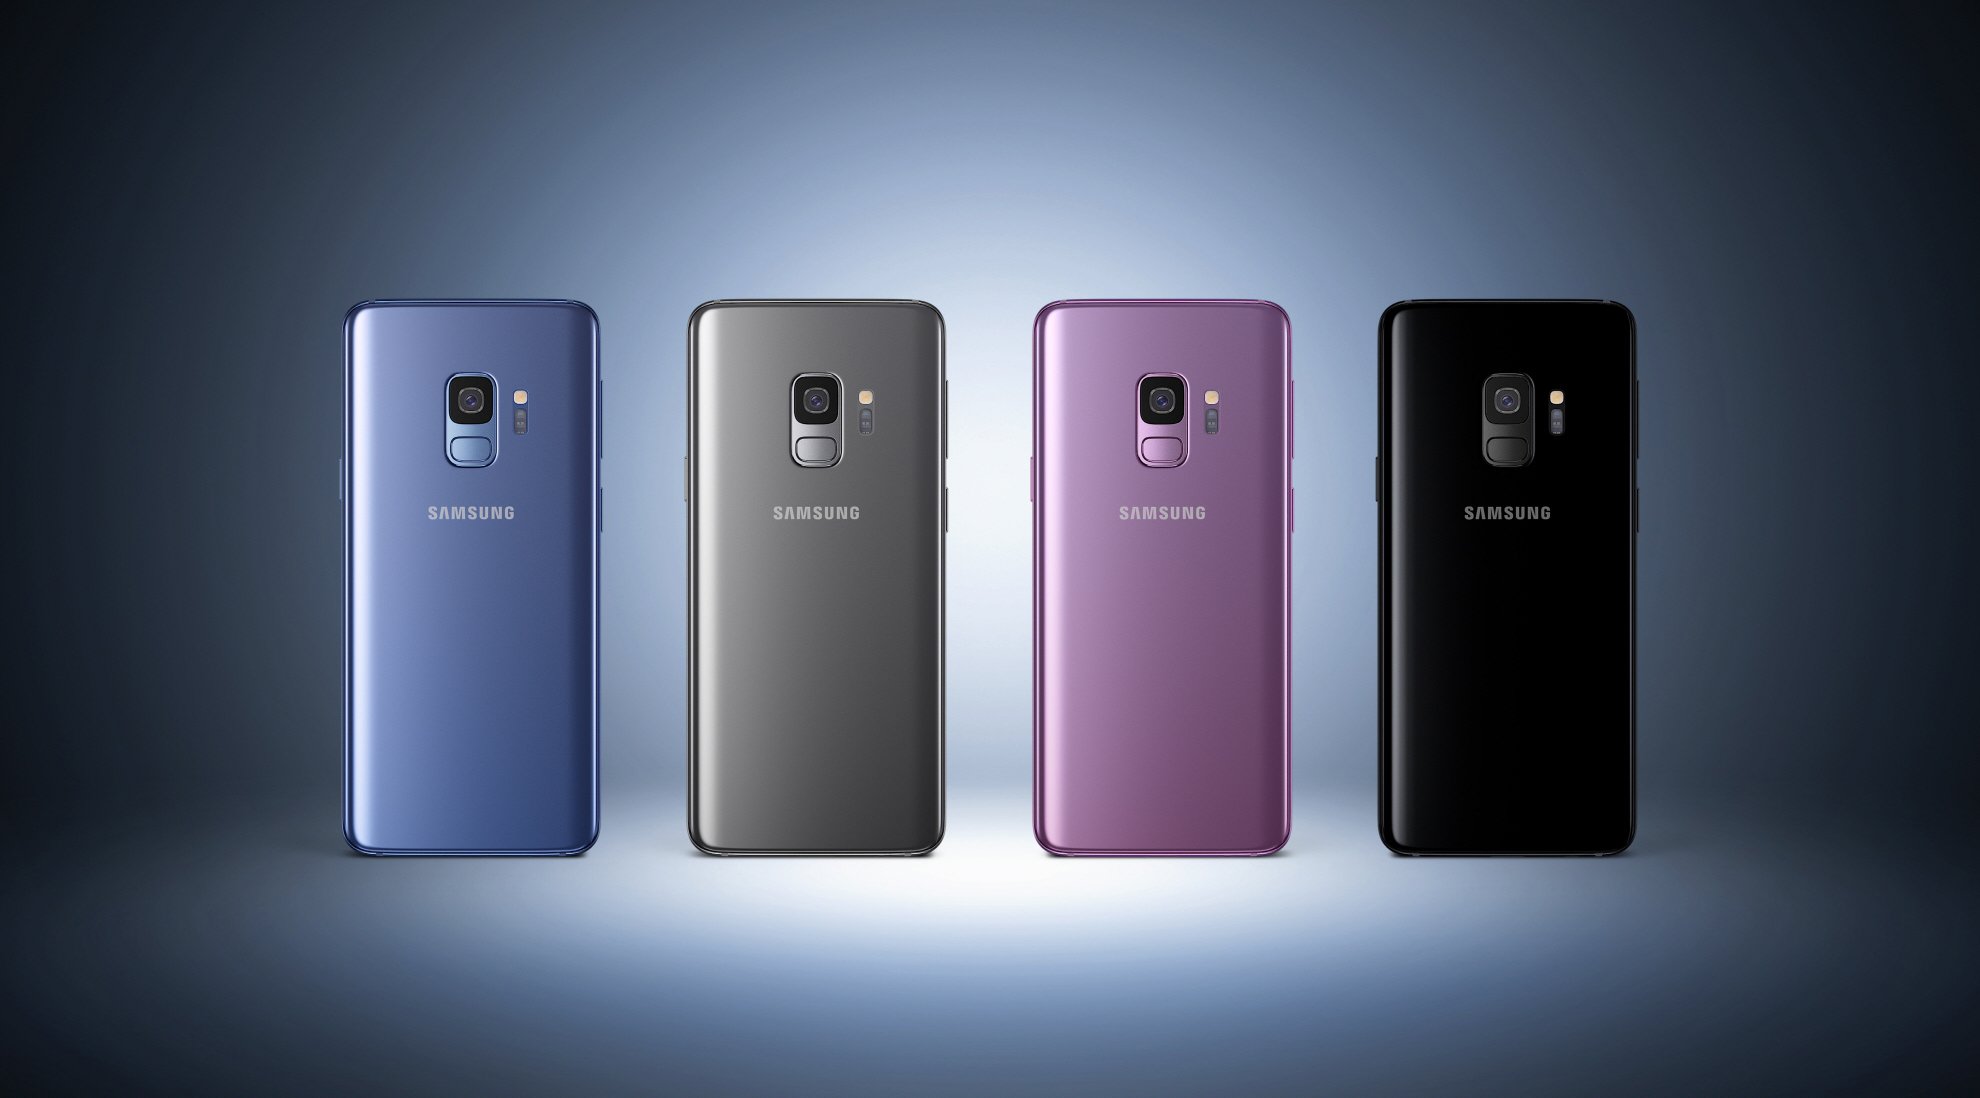 قارن بين أحدث هواتف العملاقين الكوريين LG G7 ThinQ وSamsung Galaxy S9